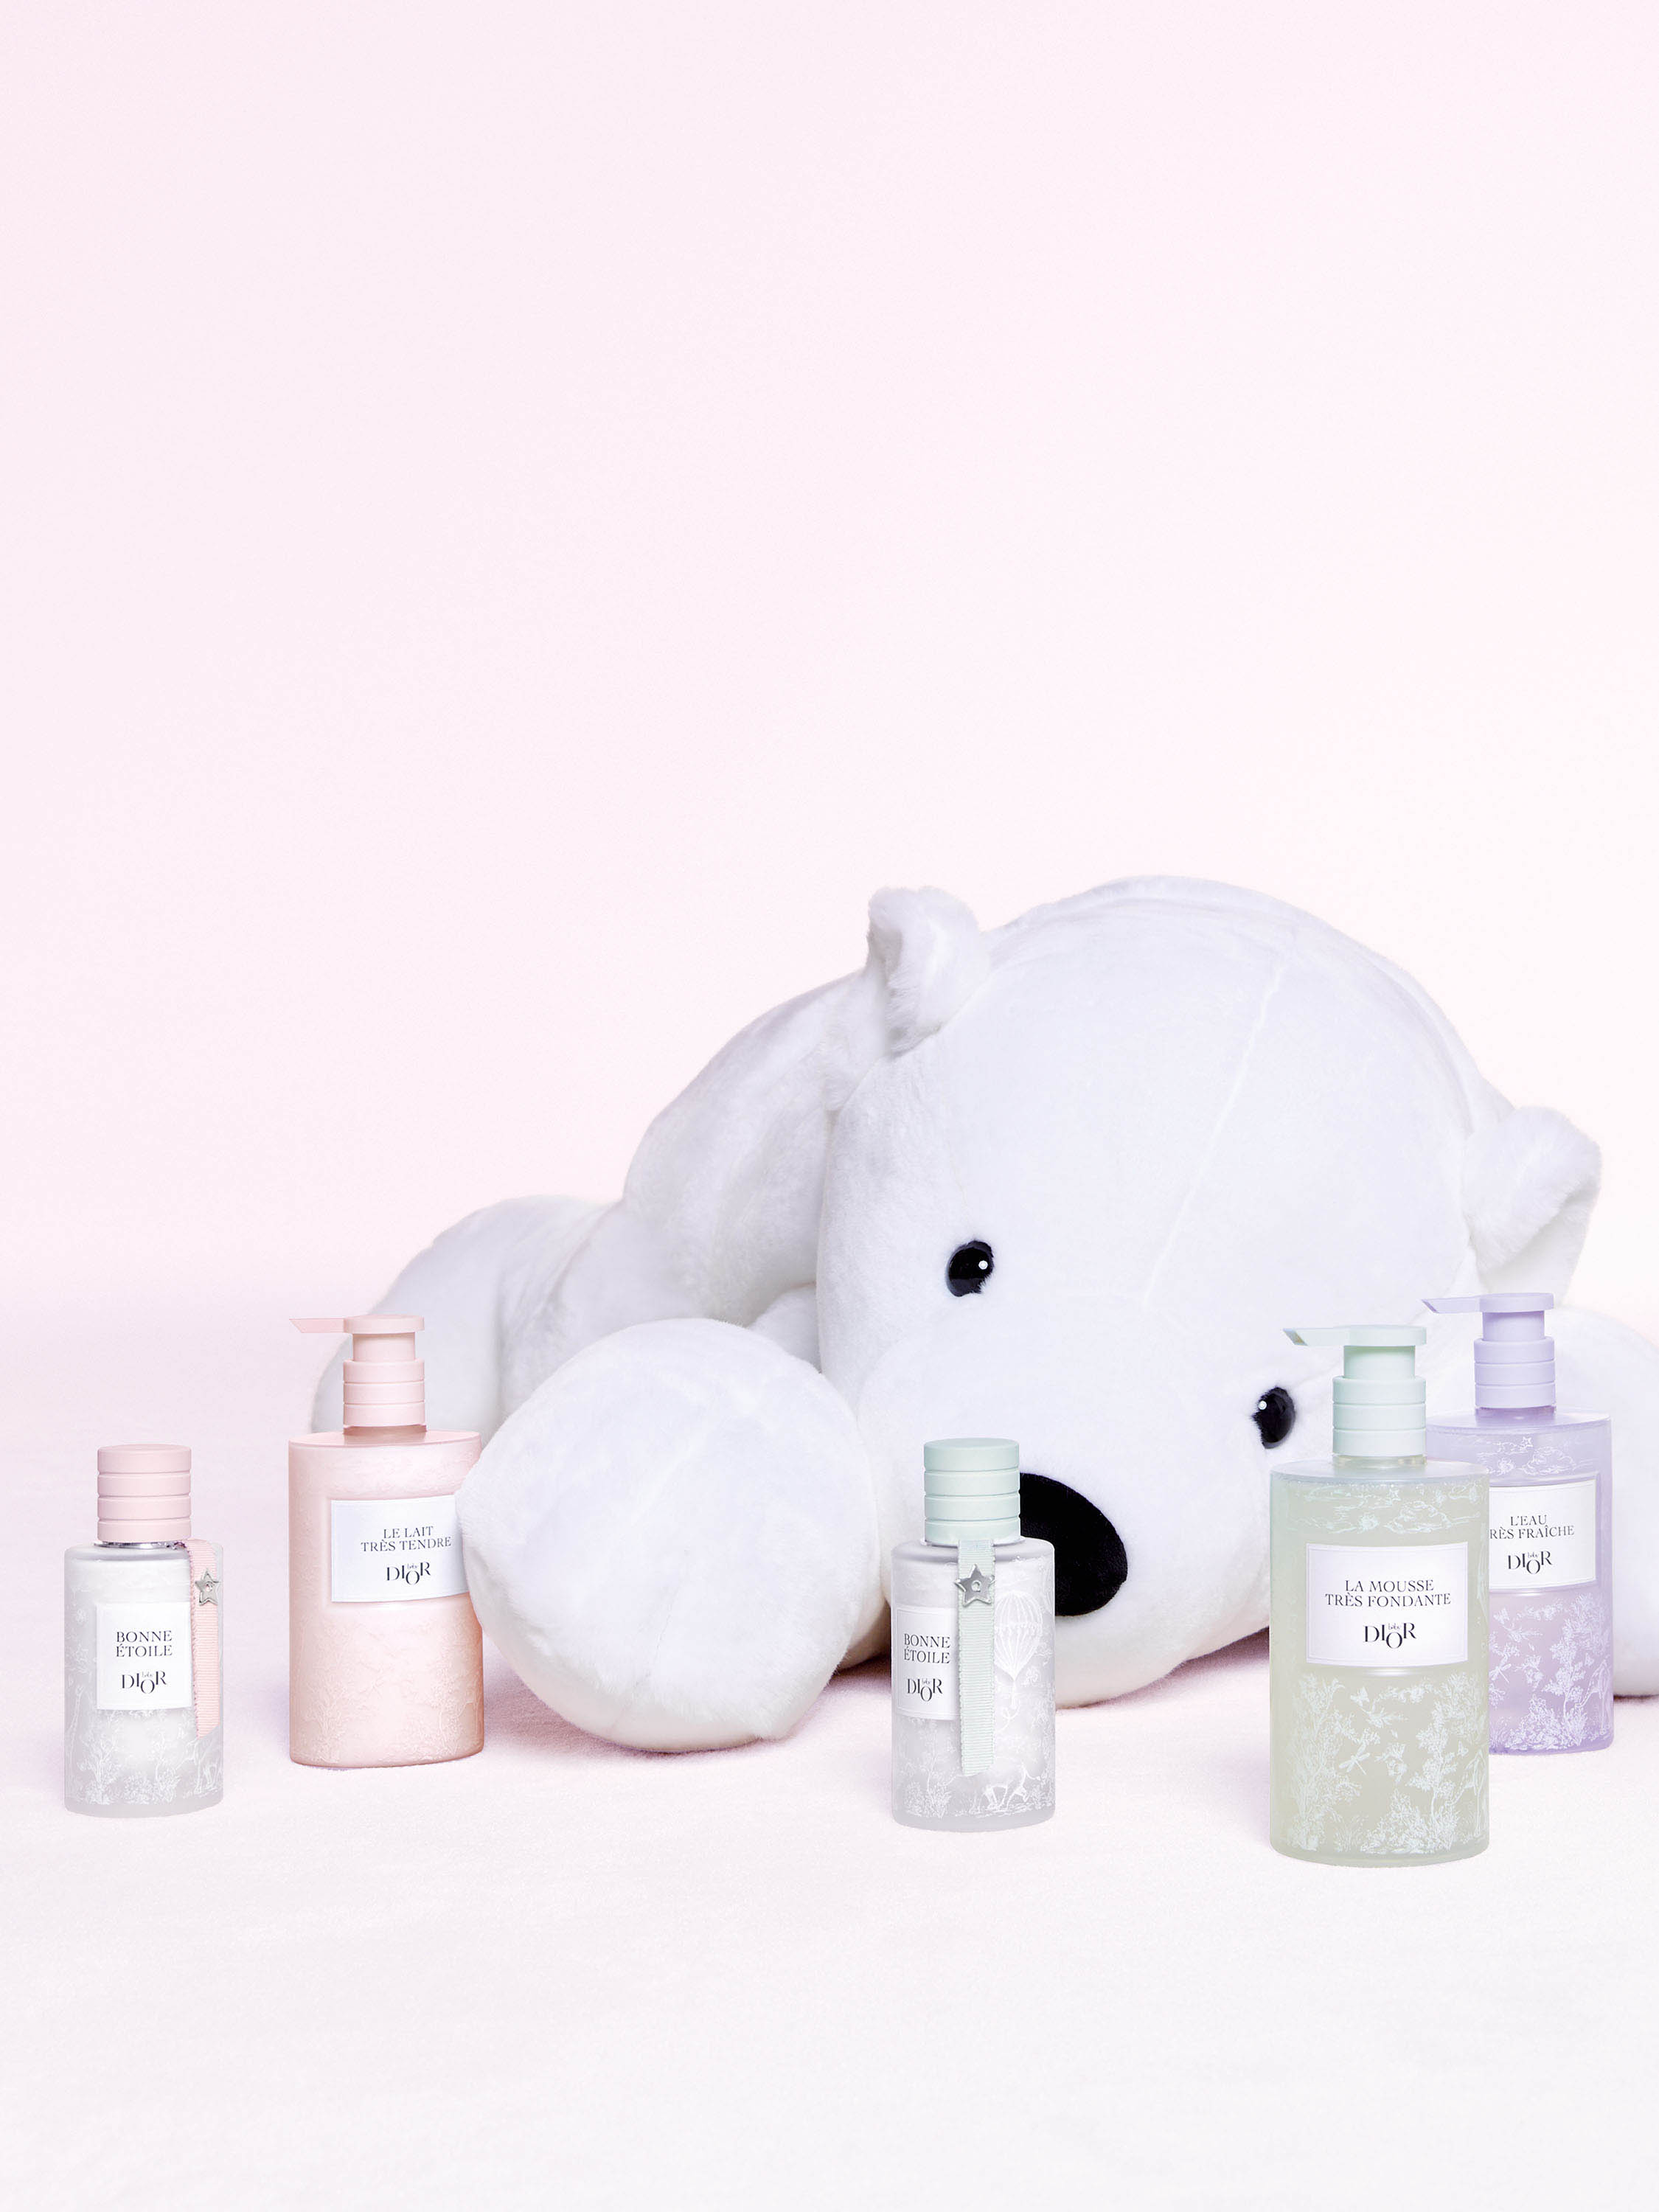 A picture of the white plush behind Baby Dior skincare products and Bonne Étoile eau de senteur.